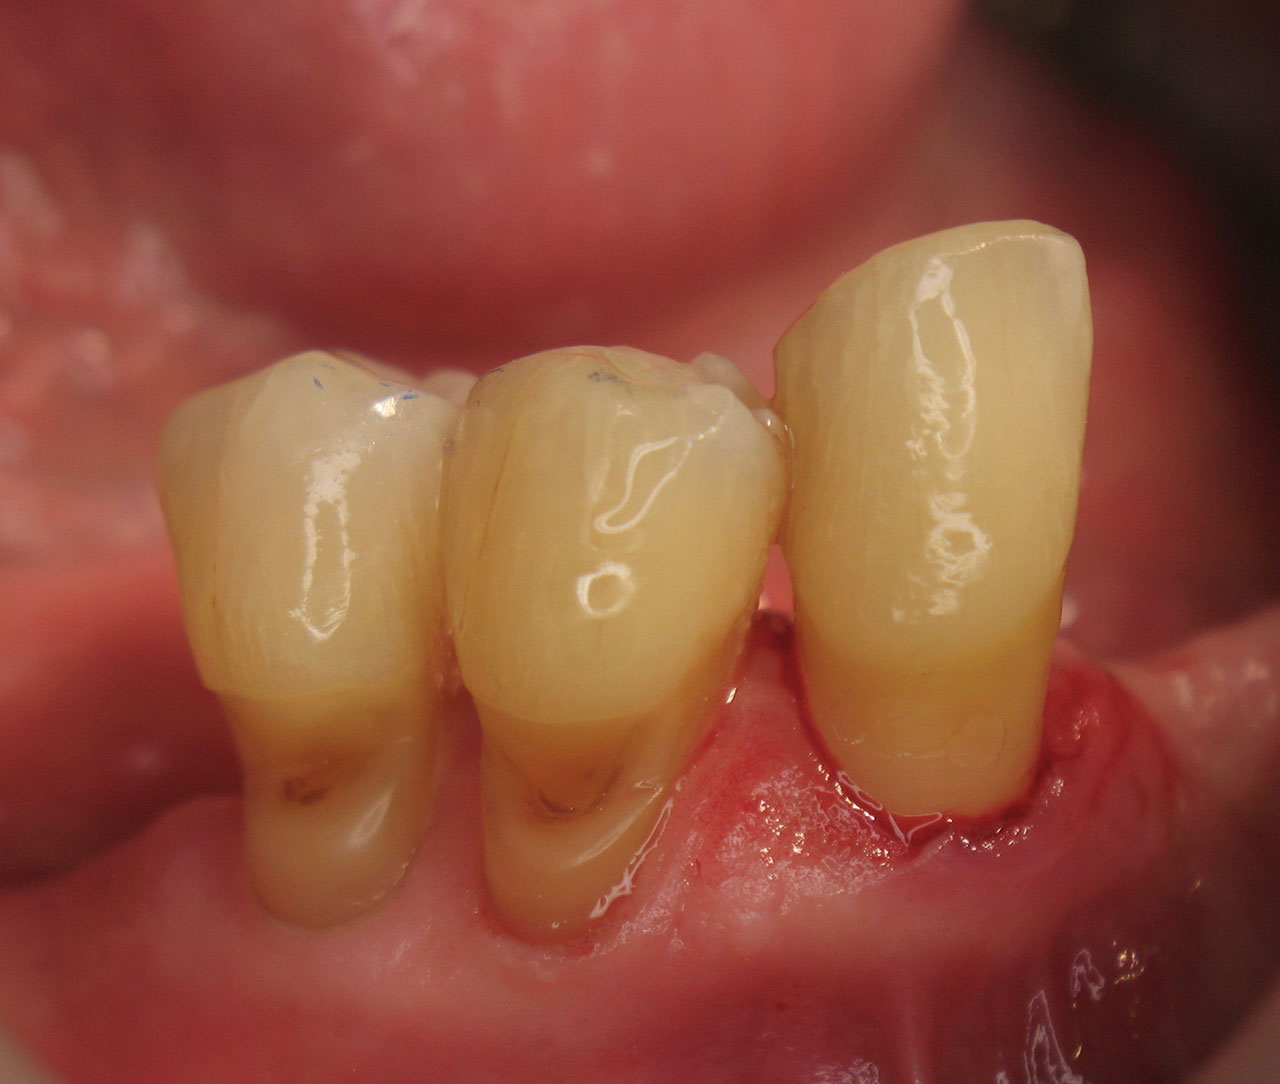 Der Patientenfall: Parodontale Erkrankung mit ausgeprägten Zahnhalsdefekten